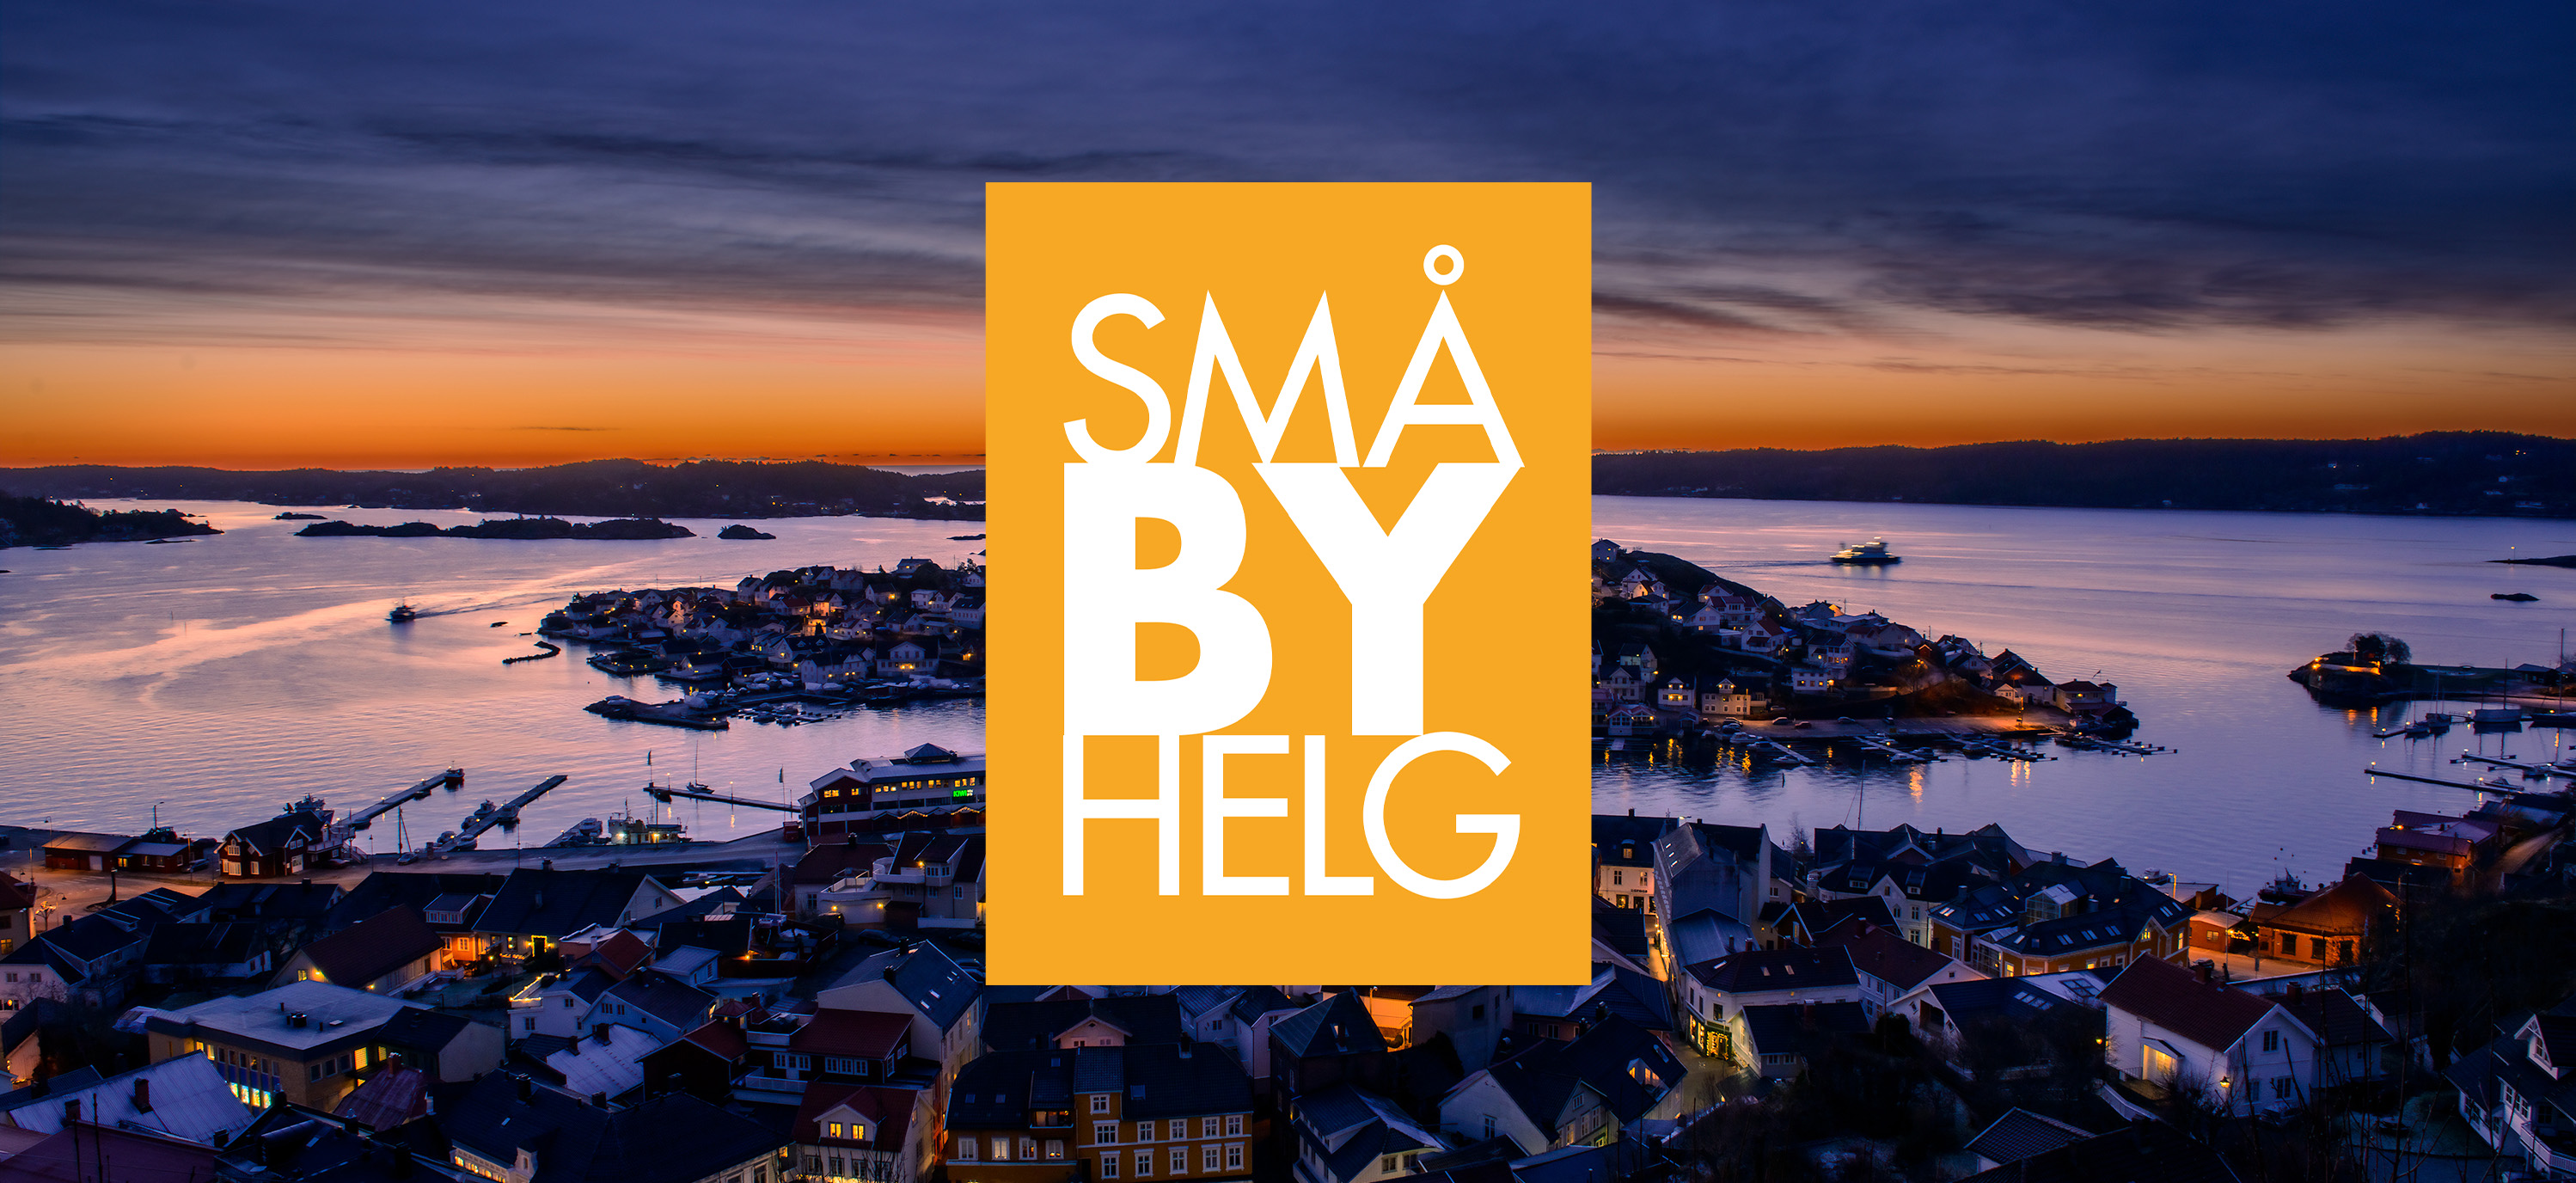 Utsikt over Kragerø sentrum med småbyhelg logo